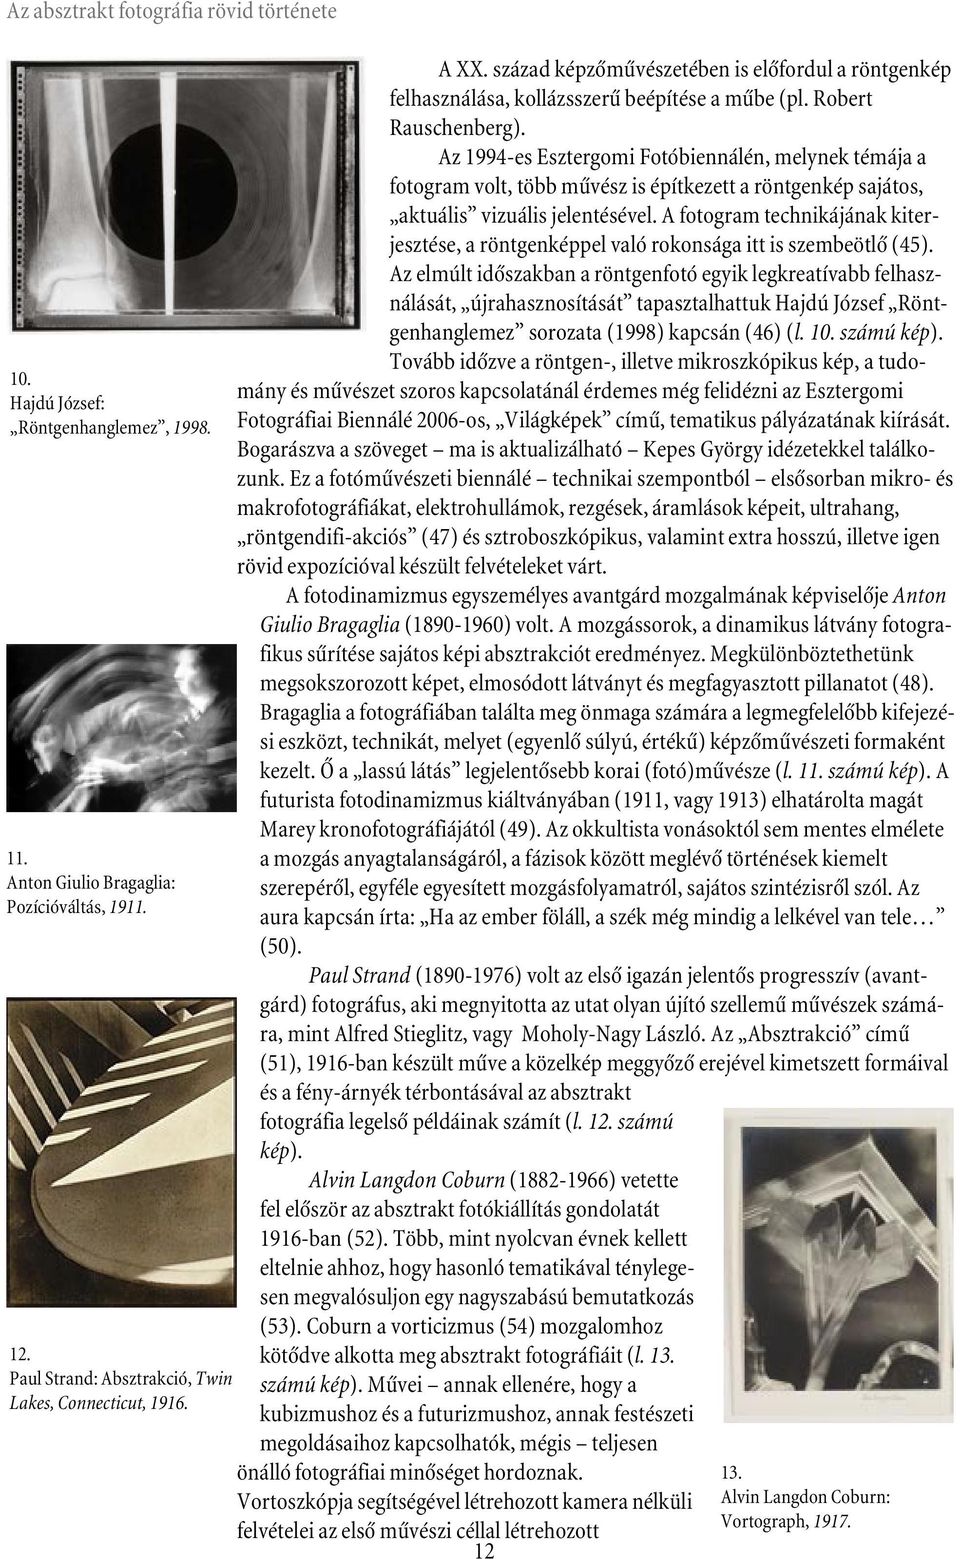 Az 1994-es Esztergomi Fotóbiennálén, melynek témája a fotogram volt, több mûvész is építkezett a röntgenkép sajátos, aktuális vizuális jelentésével.